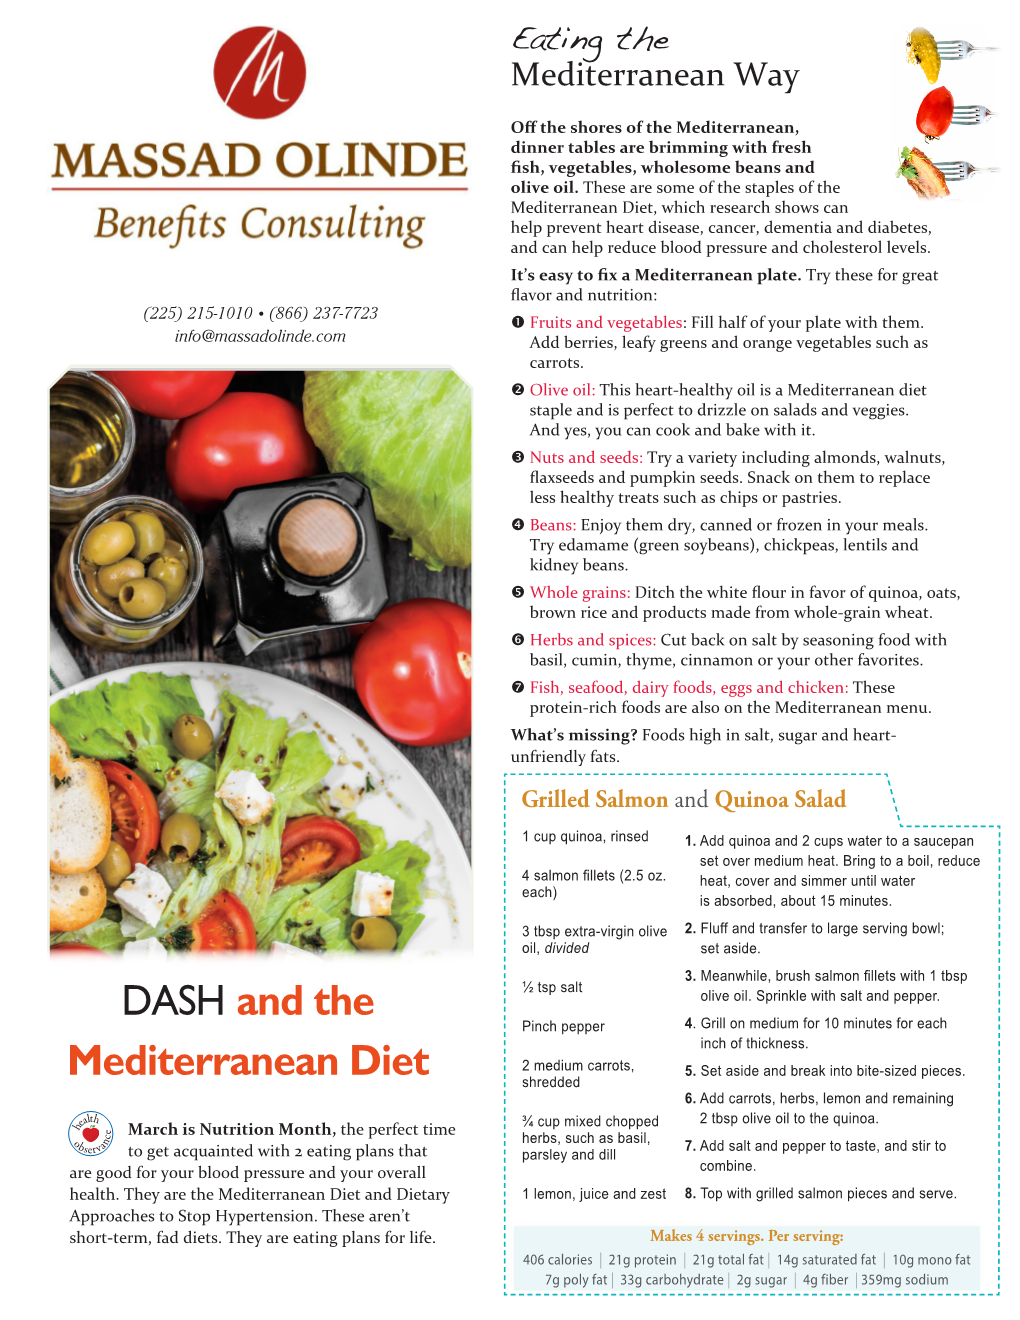 DASH and the Mediterranean Diet